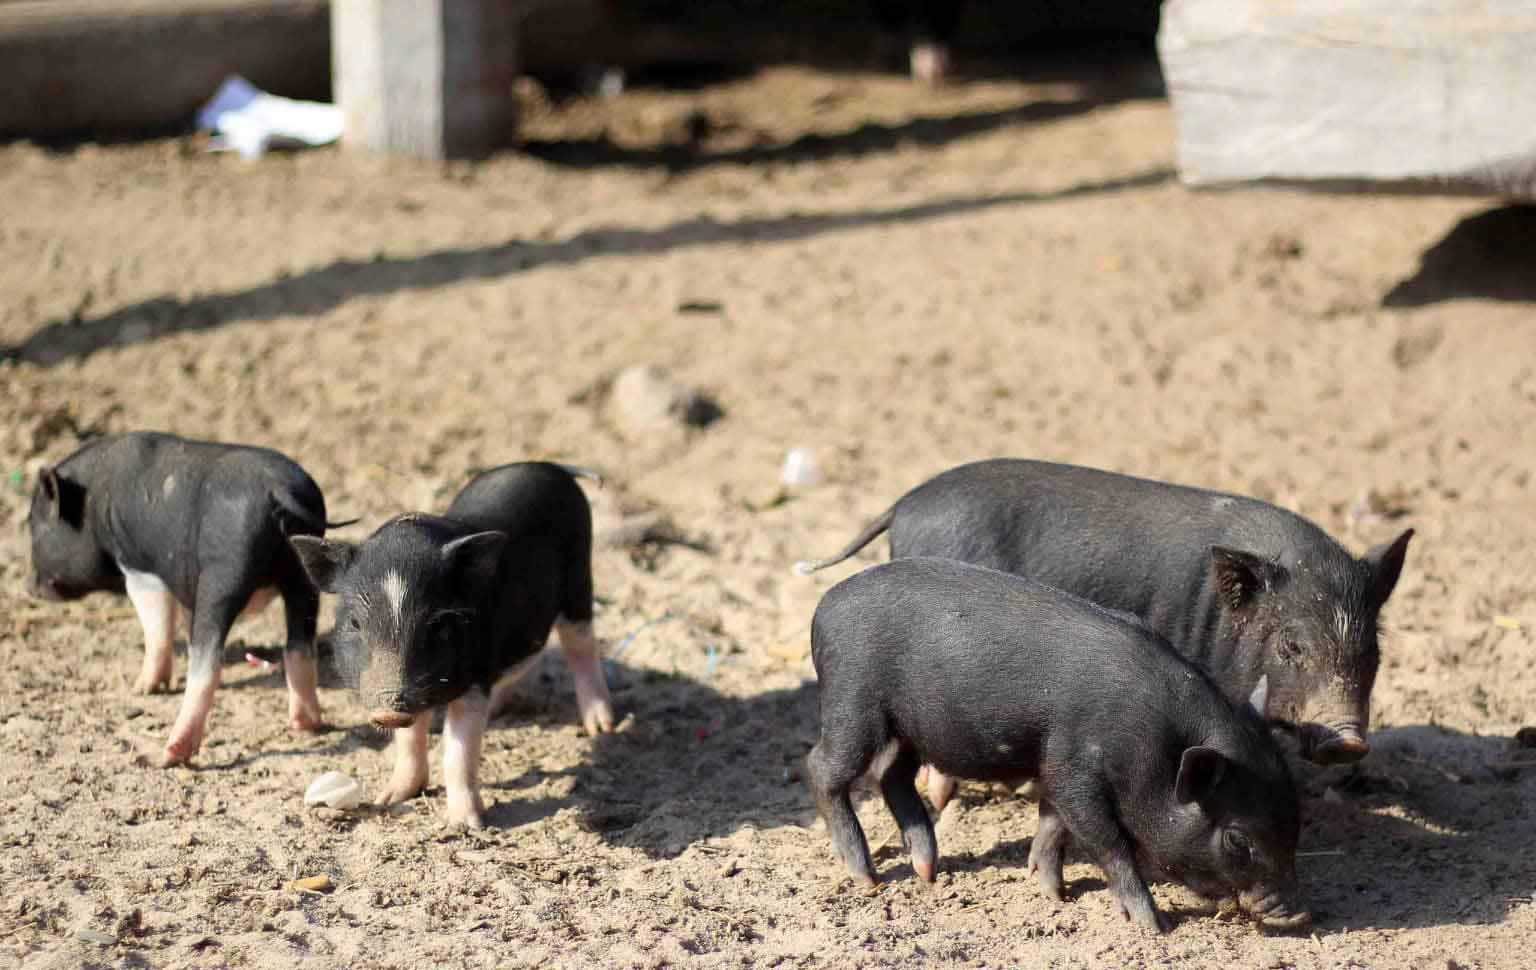 Lợn con mới sinh ra có màu đen, khoang trắng hoặc sọc dưa giống lợn rừng. Ảnh: Chí Hào